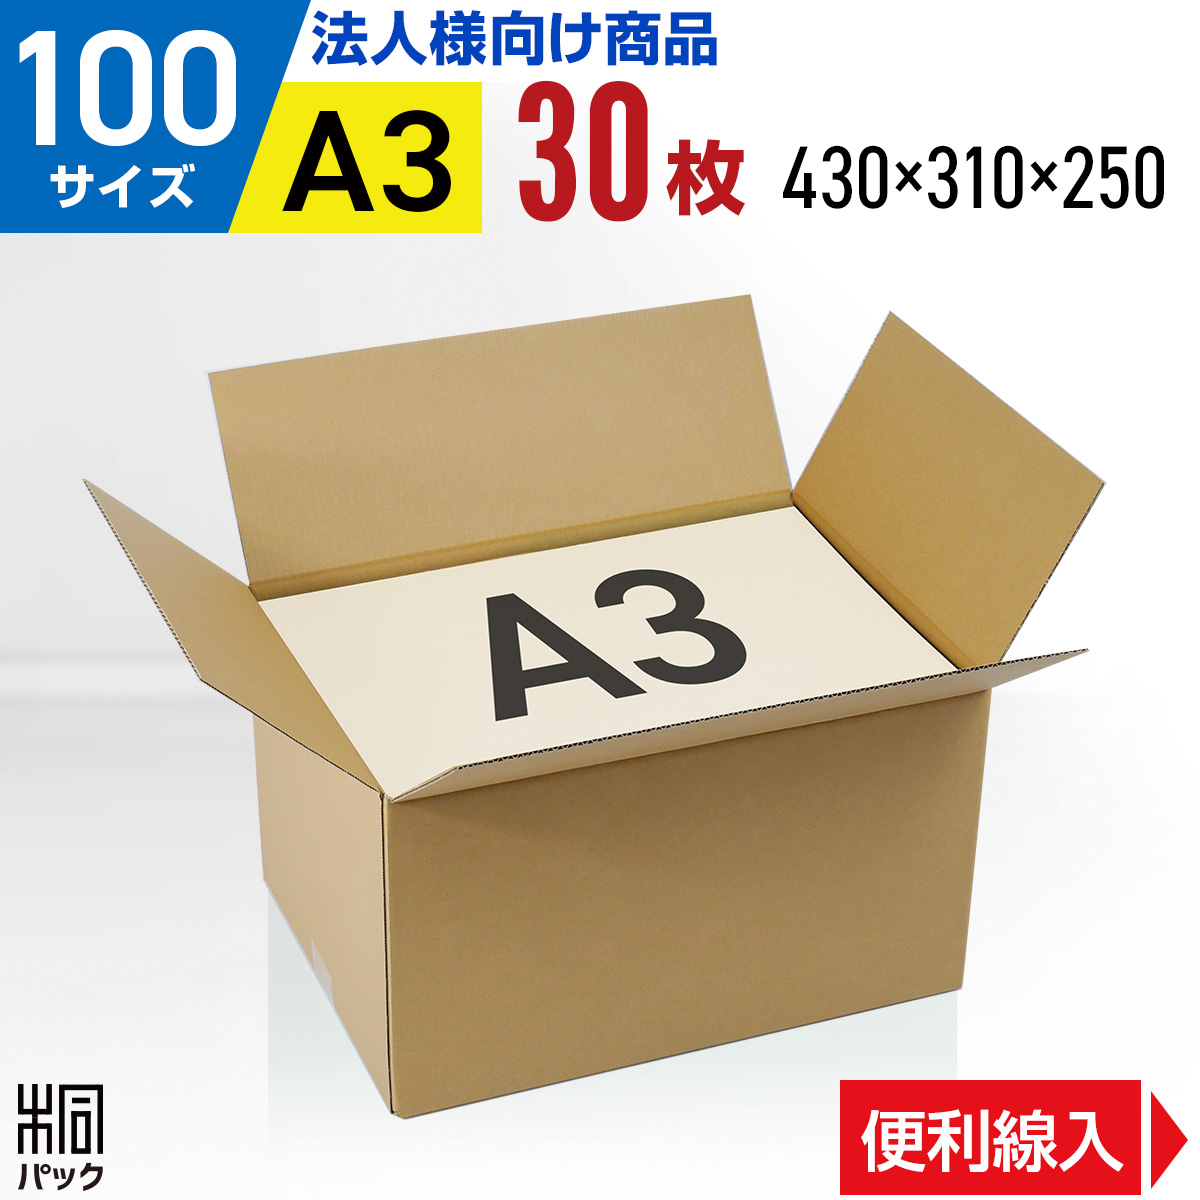 【楽天市場】段ボール 箱 100サイズ A3 便利線入り 30枚 (3mm厚